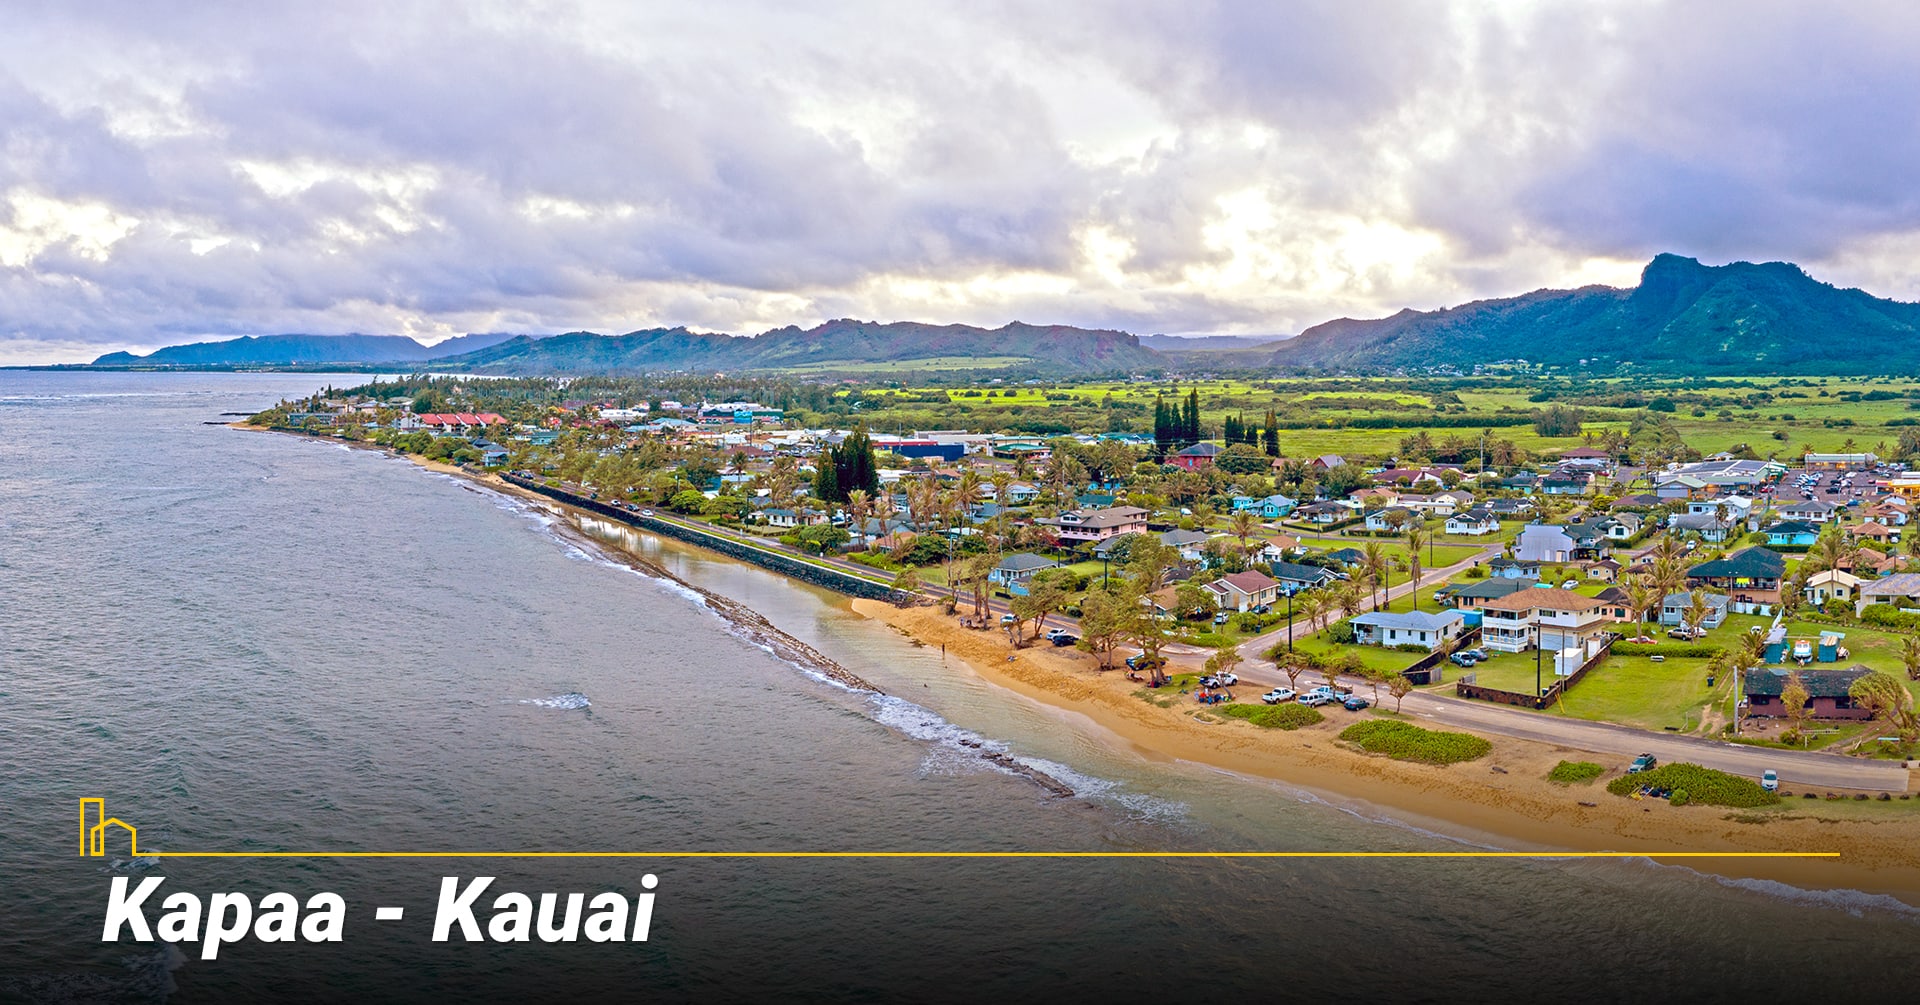 Kapaa - Kauai